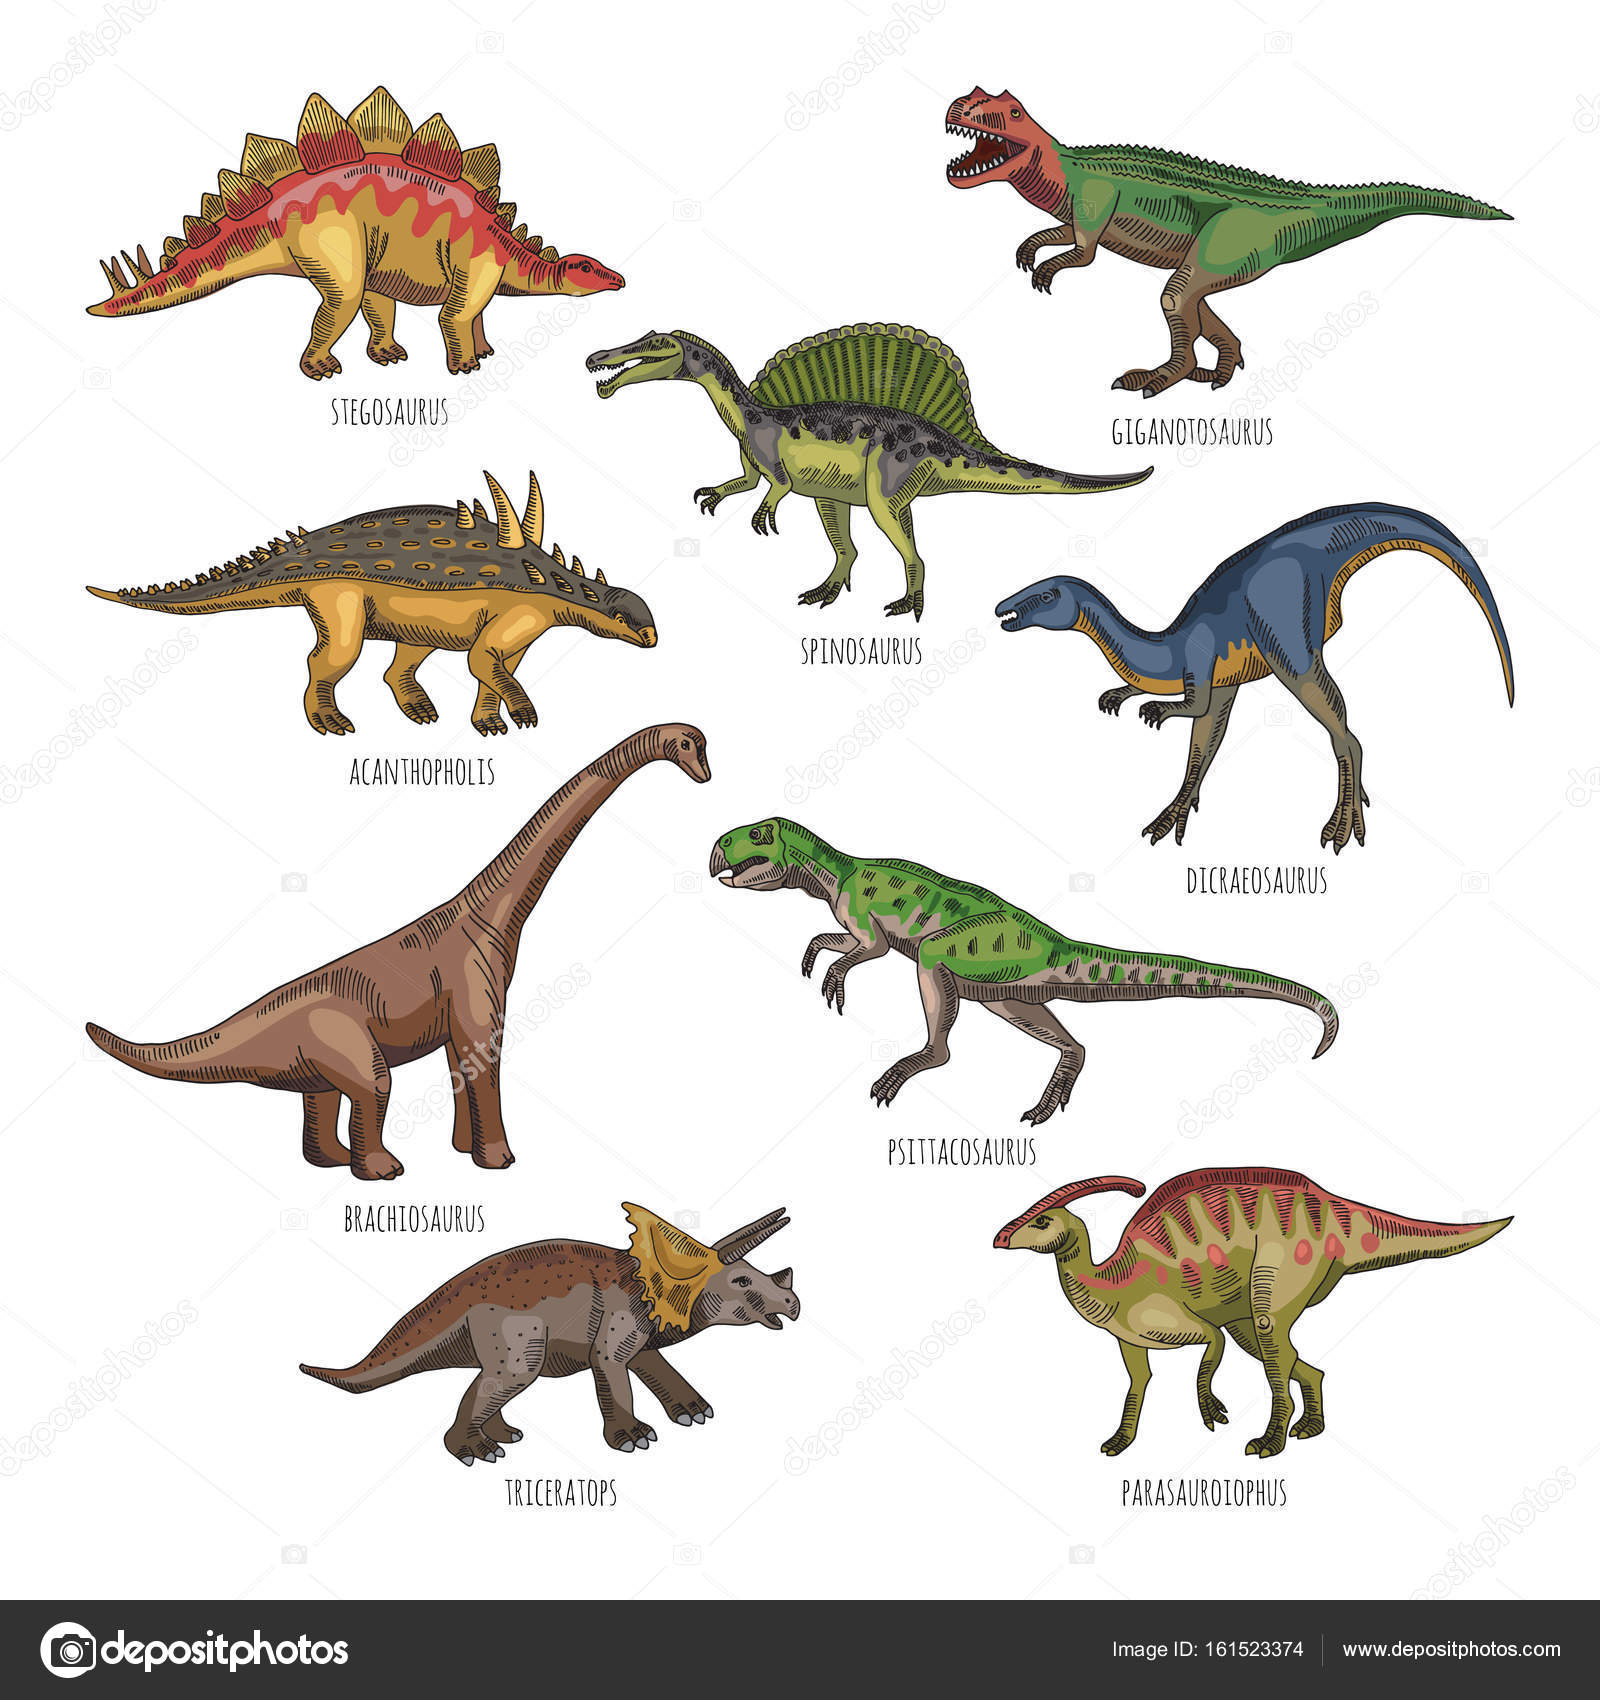 Farbige Abbildungen der verschiedenen DinosaurierArten 